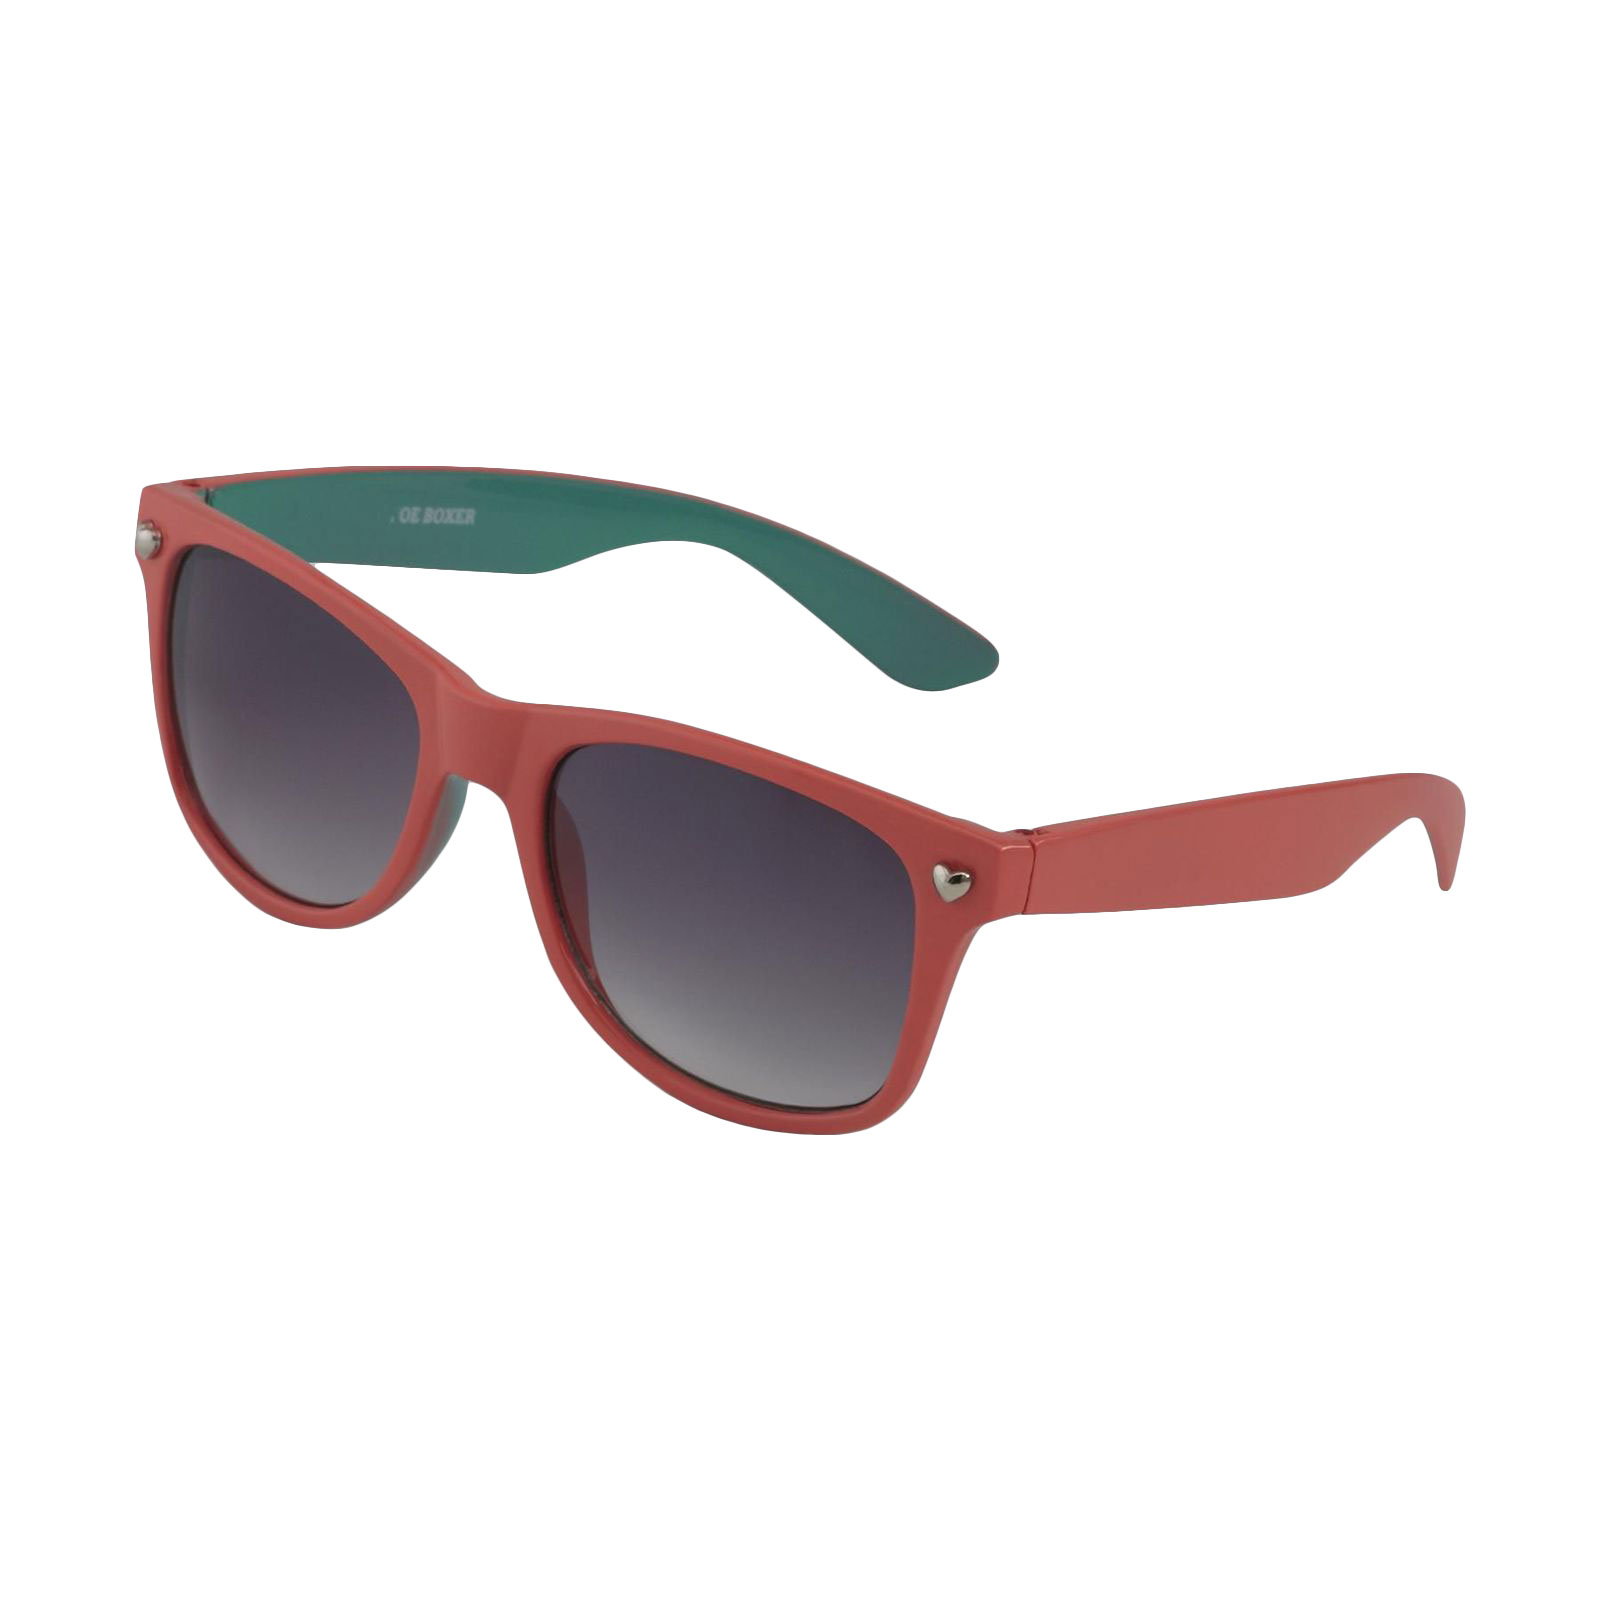 Joe Boxer Women's Neon Coral and Aqua Retro Sunglasses